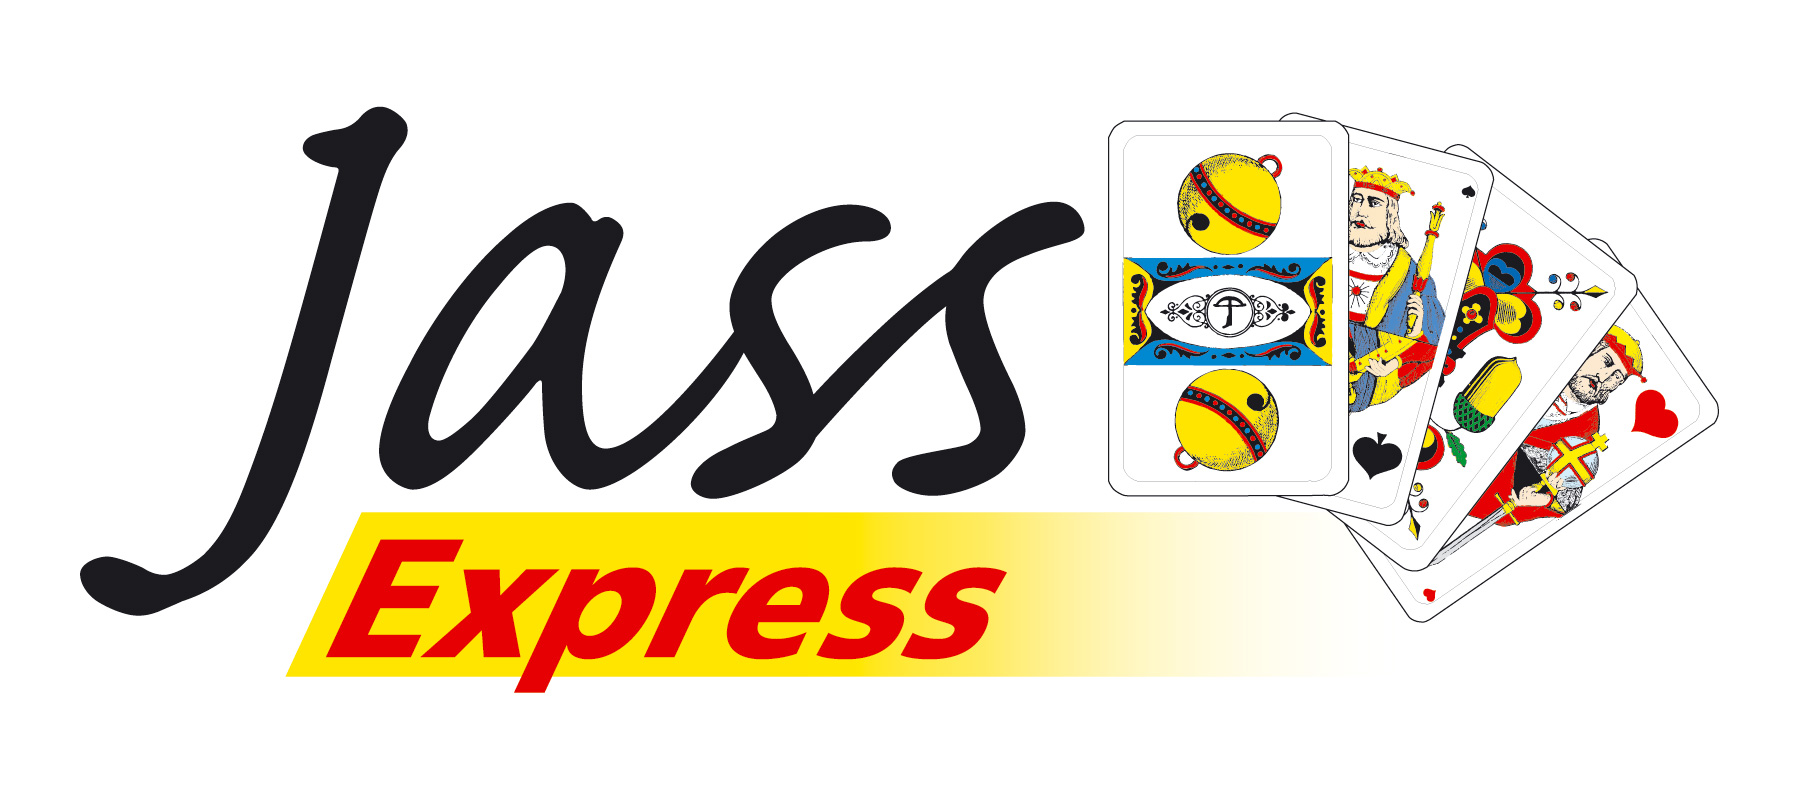 Herzlich Willkommen auf der Website von Jass Express. Wir veranstalten regelmssig Jass-Events. 